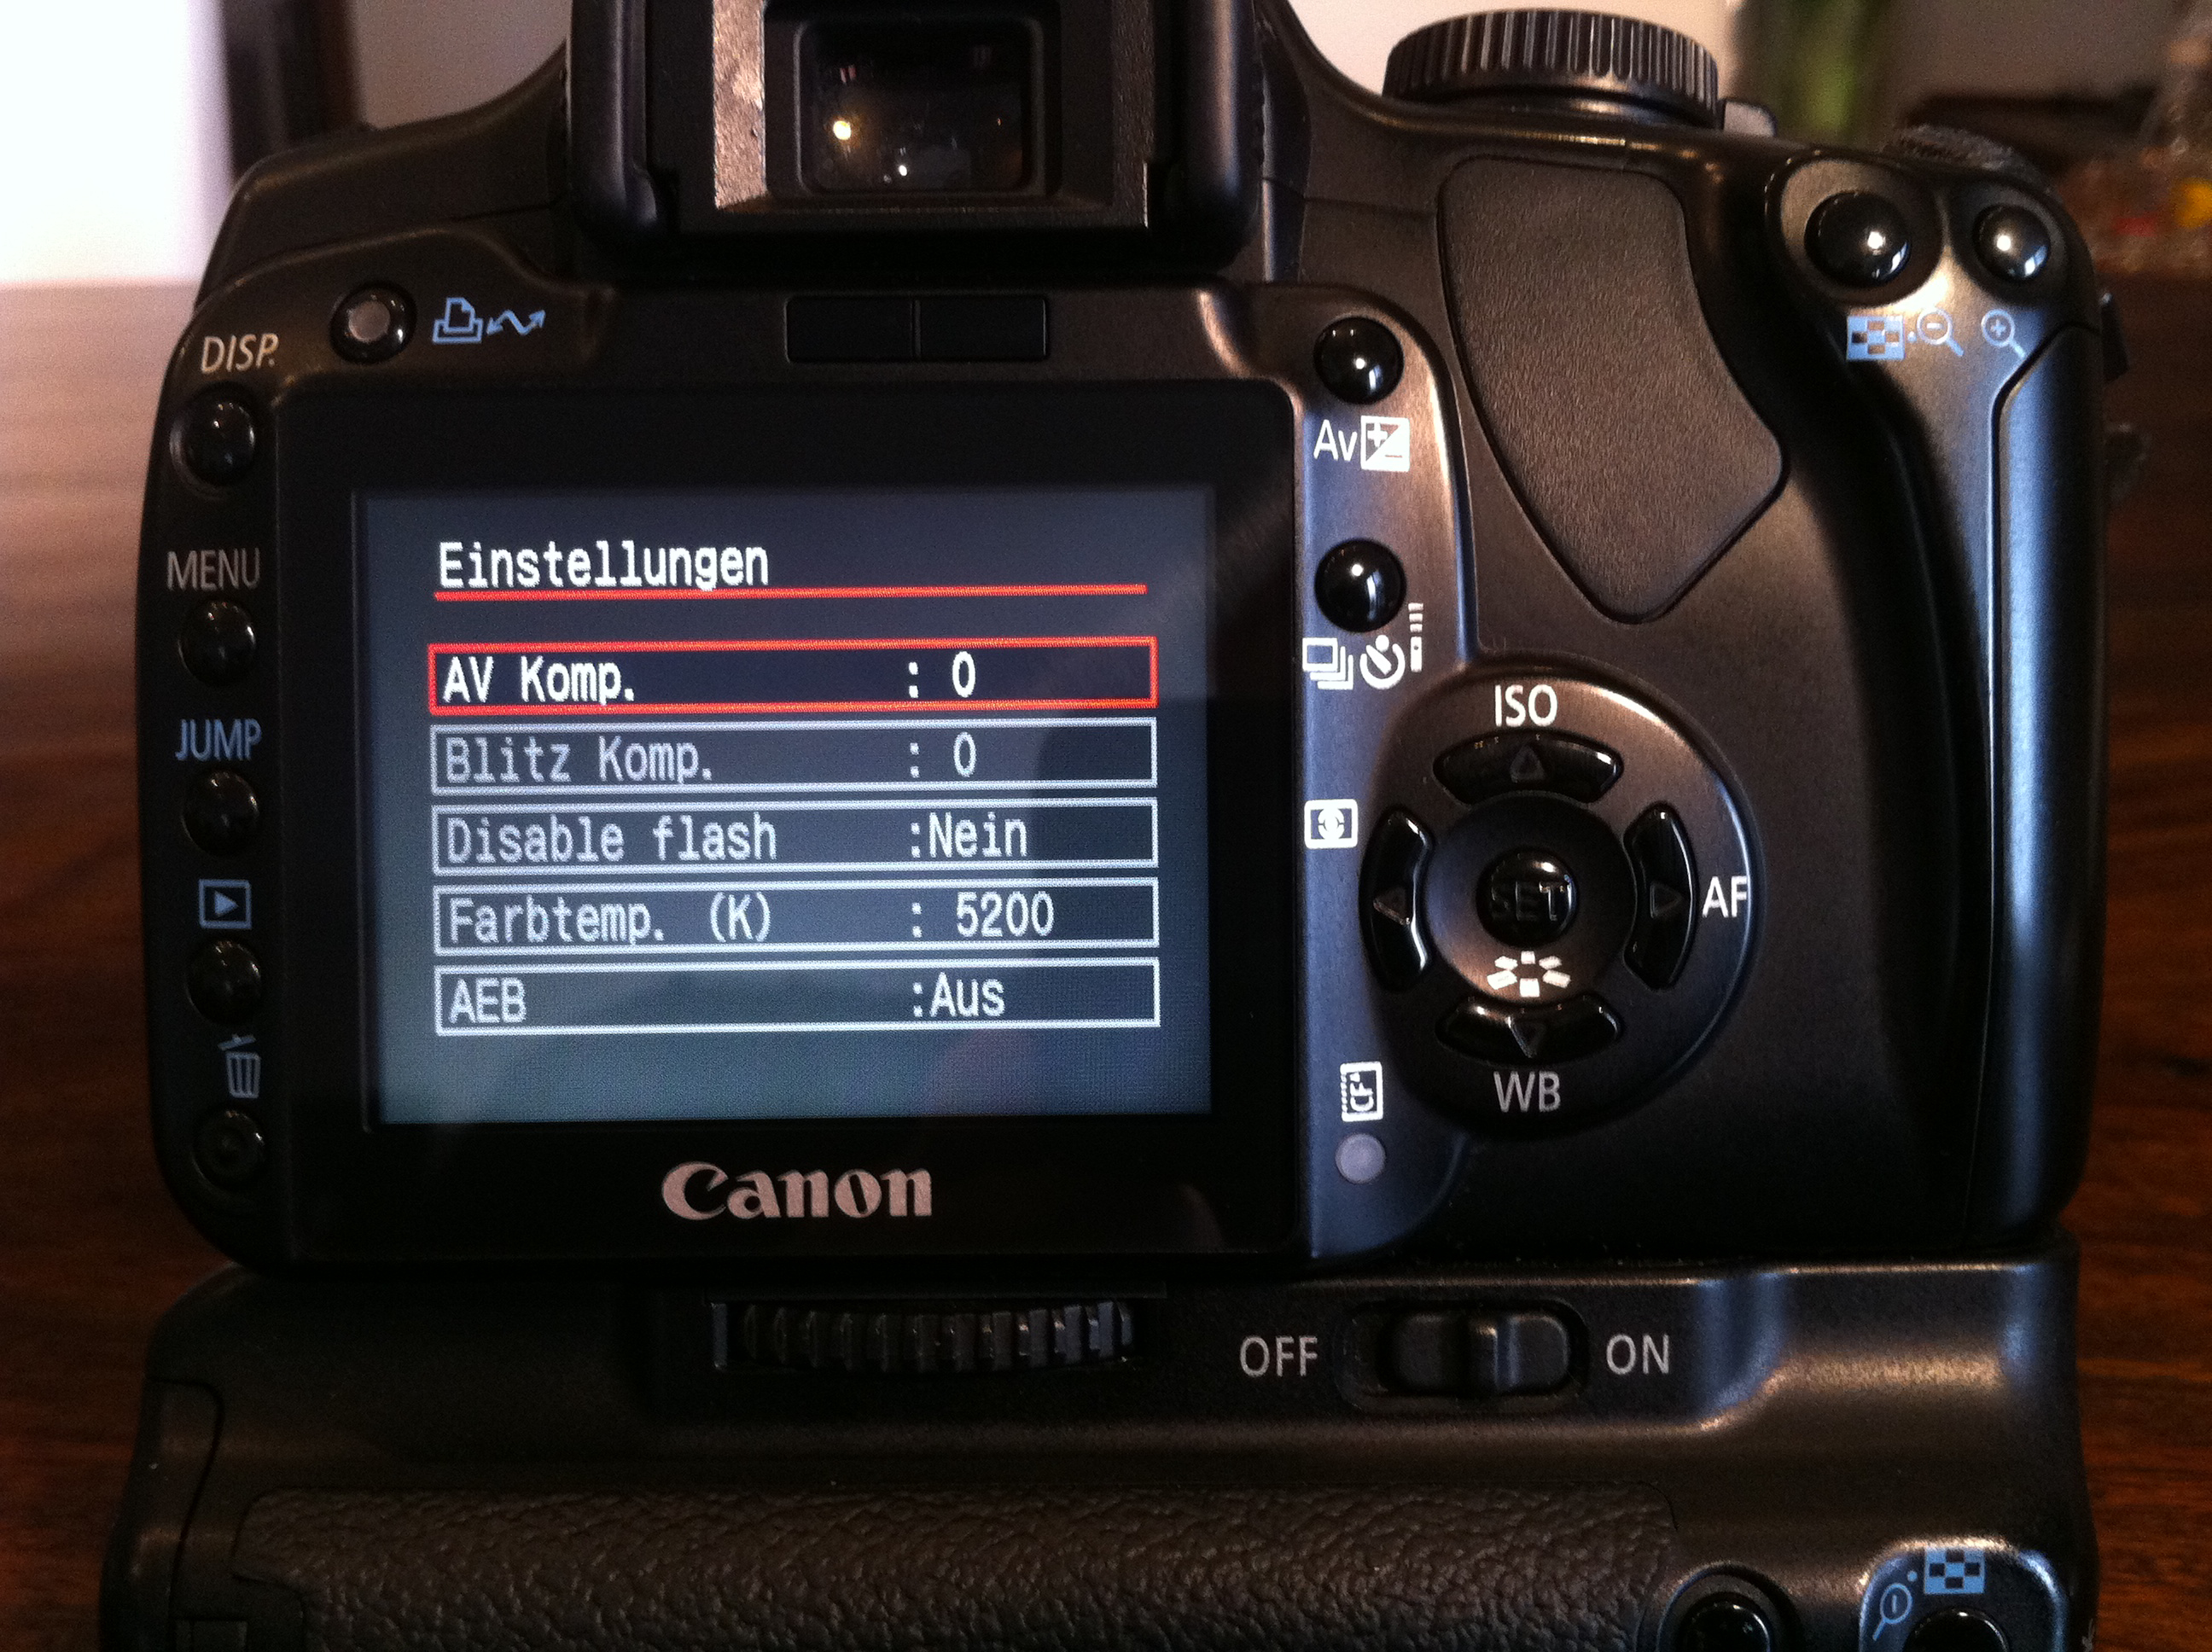 USB VIDEO OUT Gummi Staub Tür Abdeckung Ersatz für Canon EOS 400D 